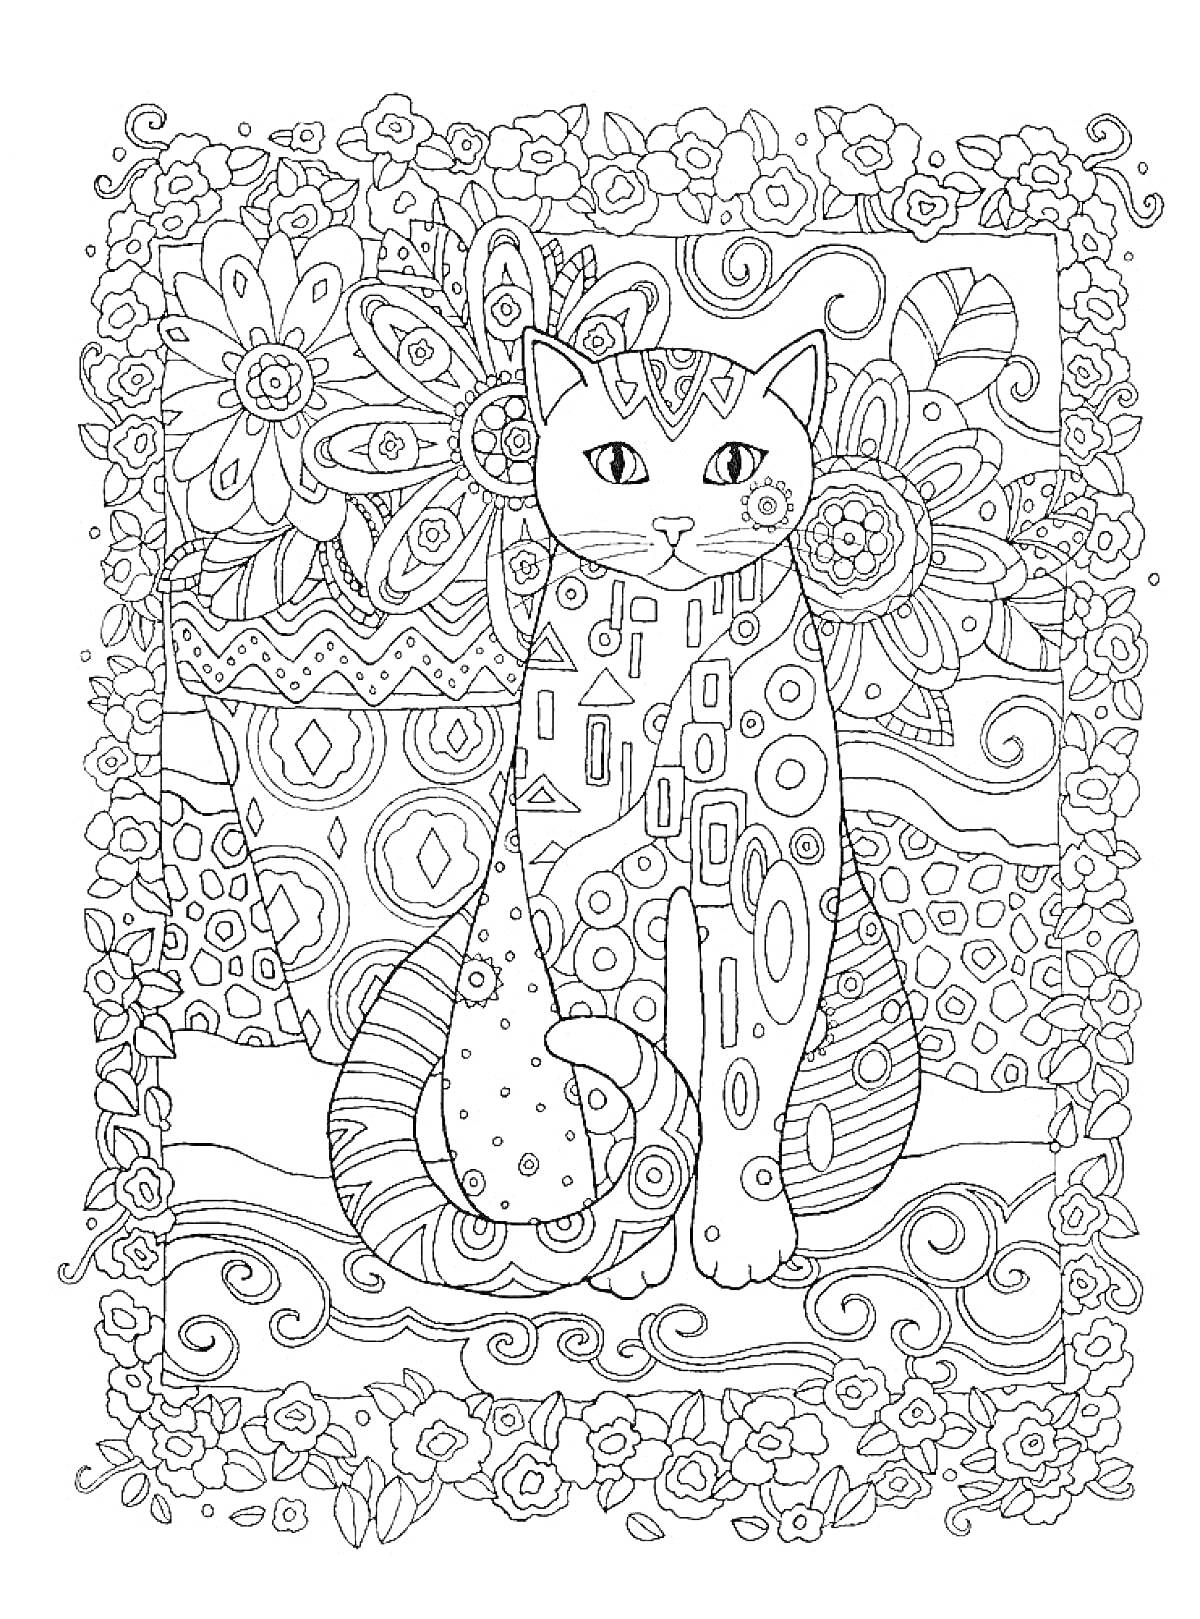 Раскраска Кот сидит на фоне цветов, узоров и декоративной рамки из цветов и завитков